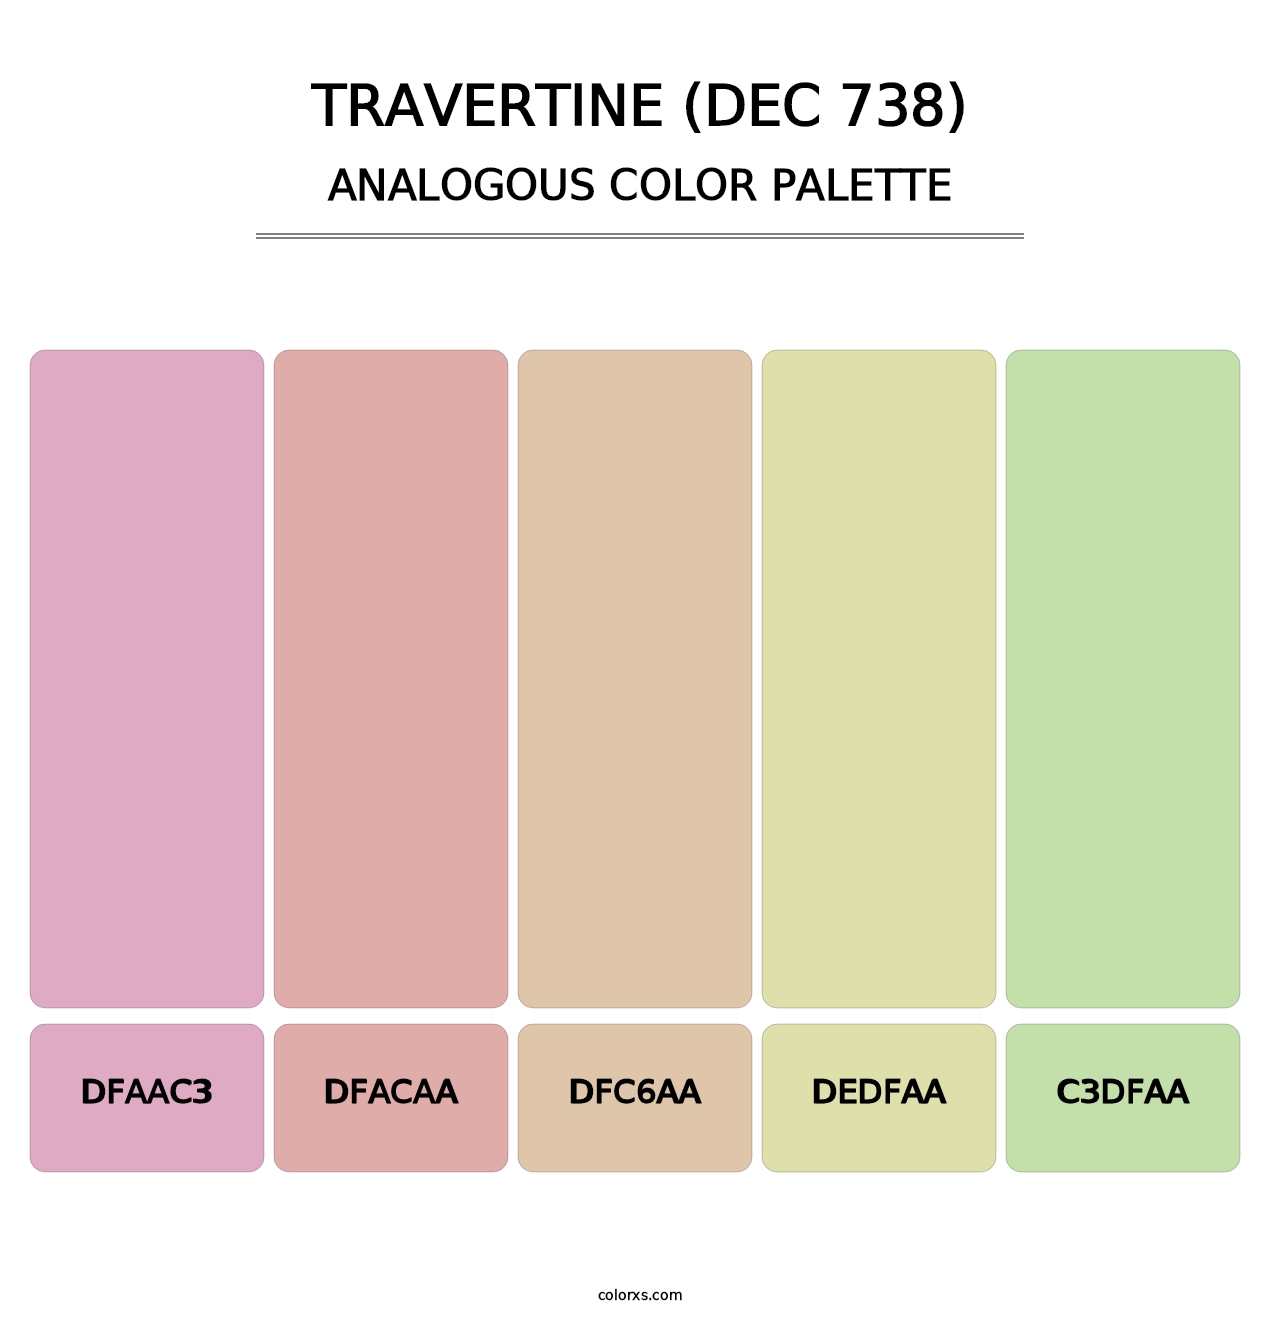 Travertine (DEC 738) - Analogous Color Palette